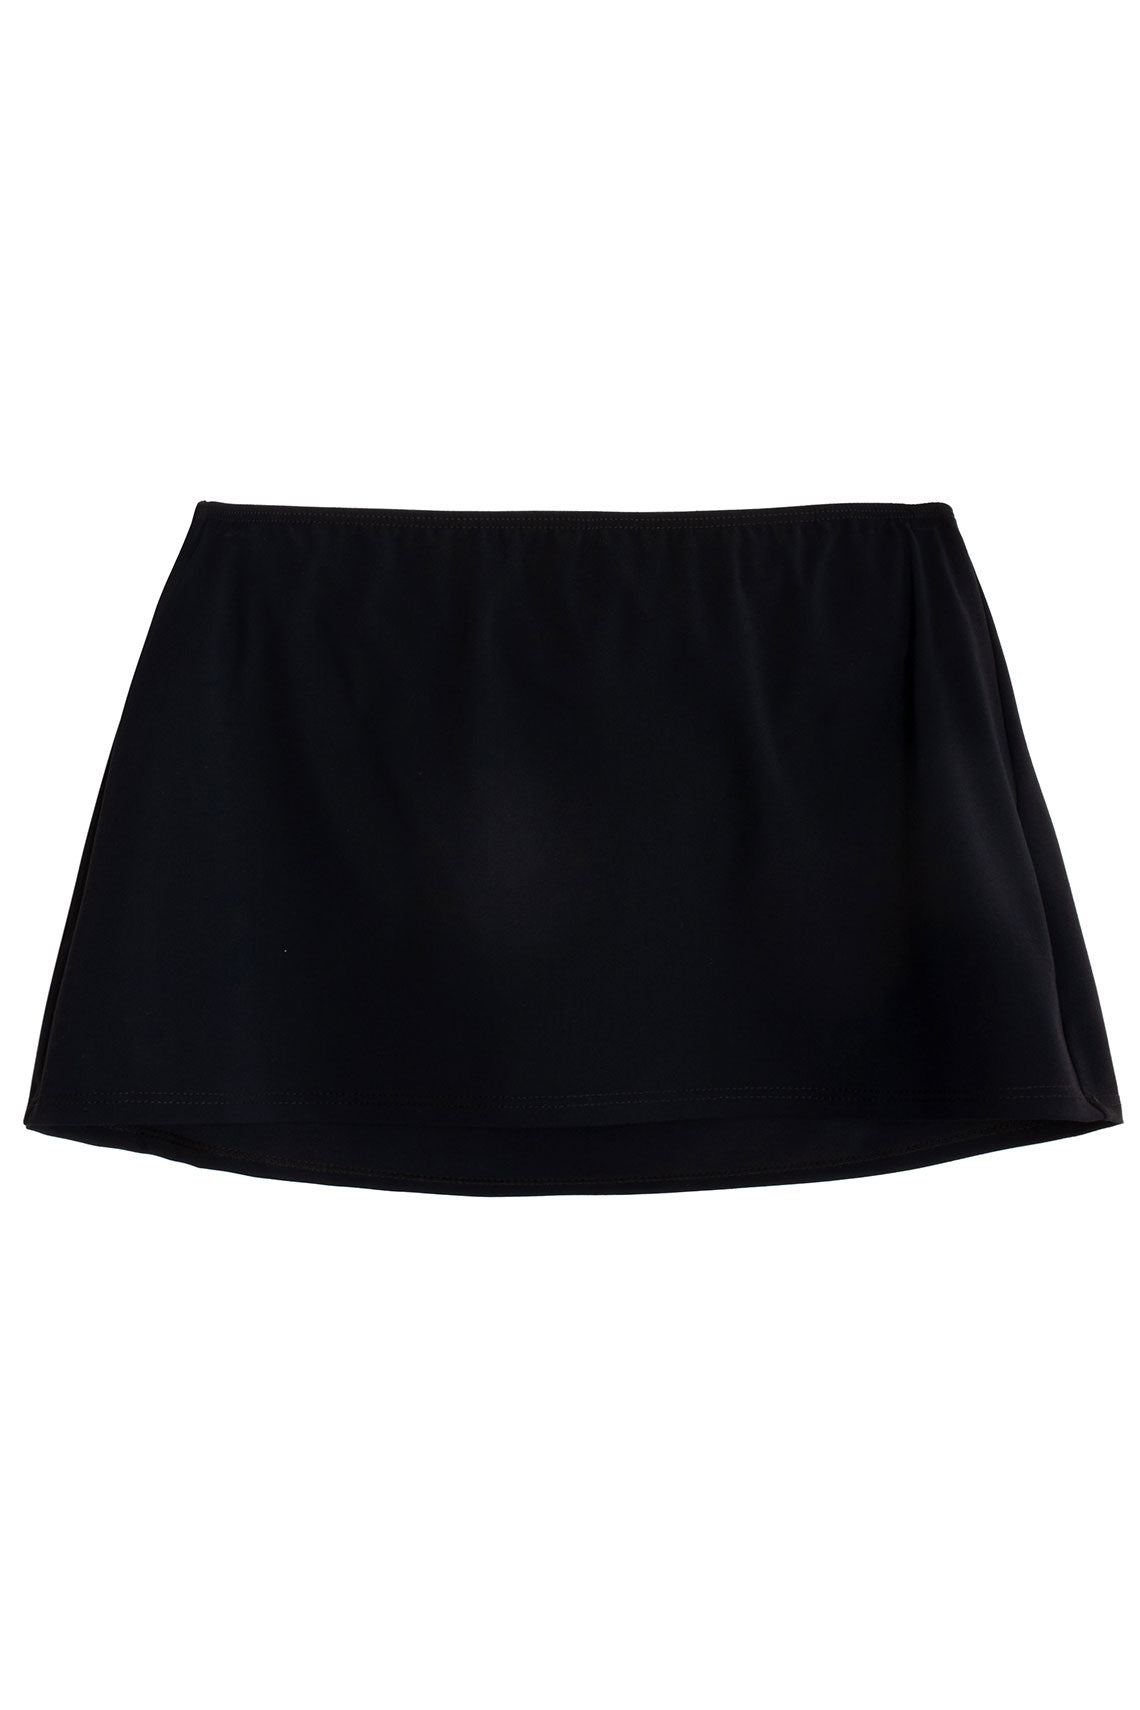 Black Bisou Skirt